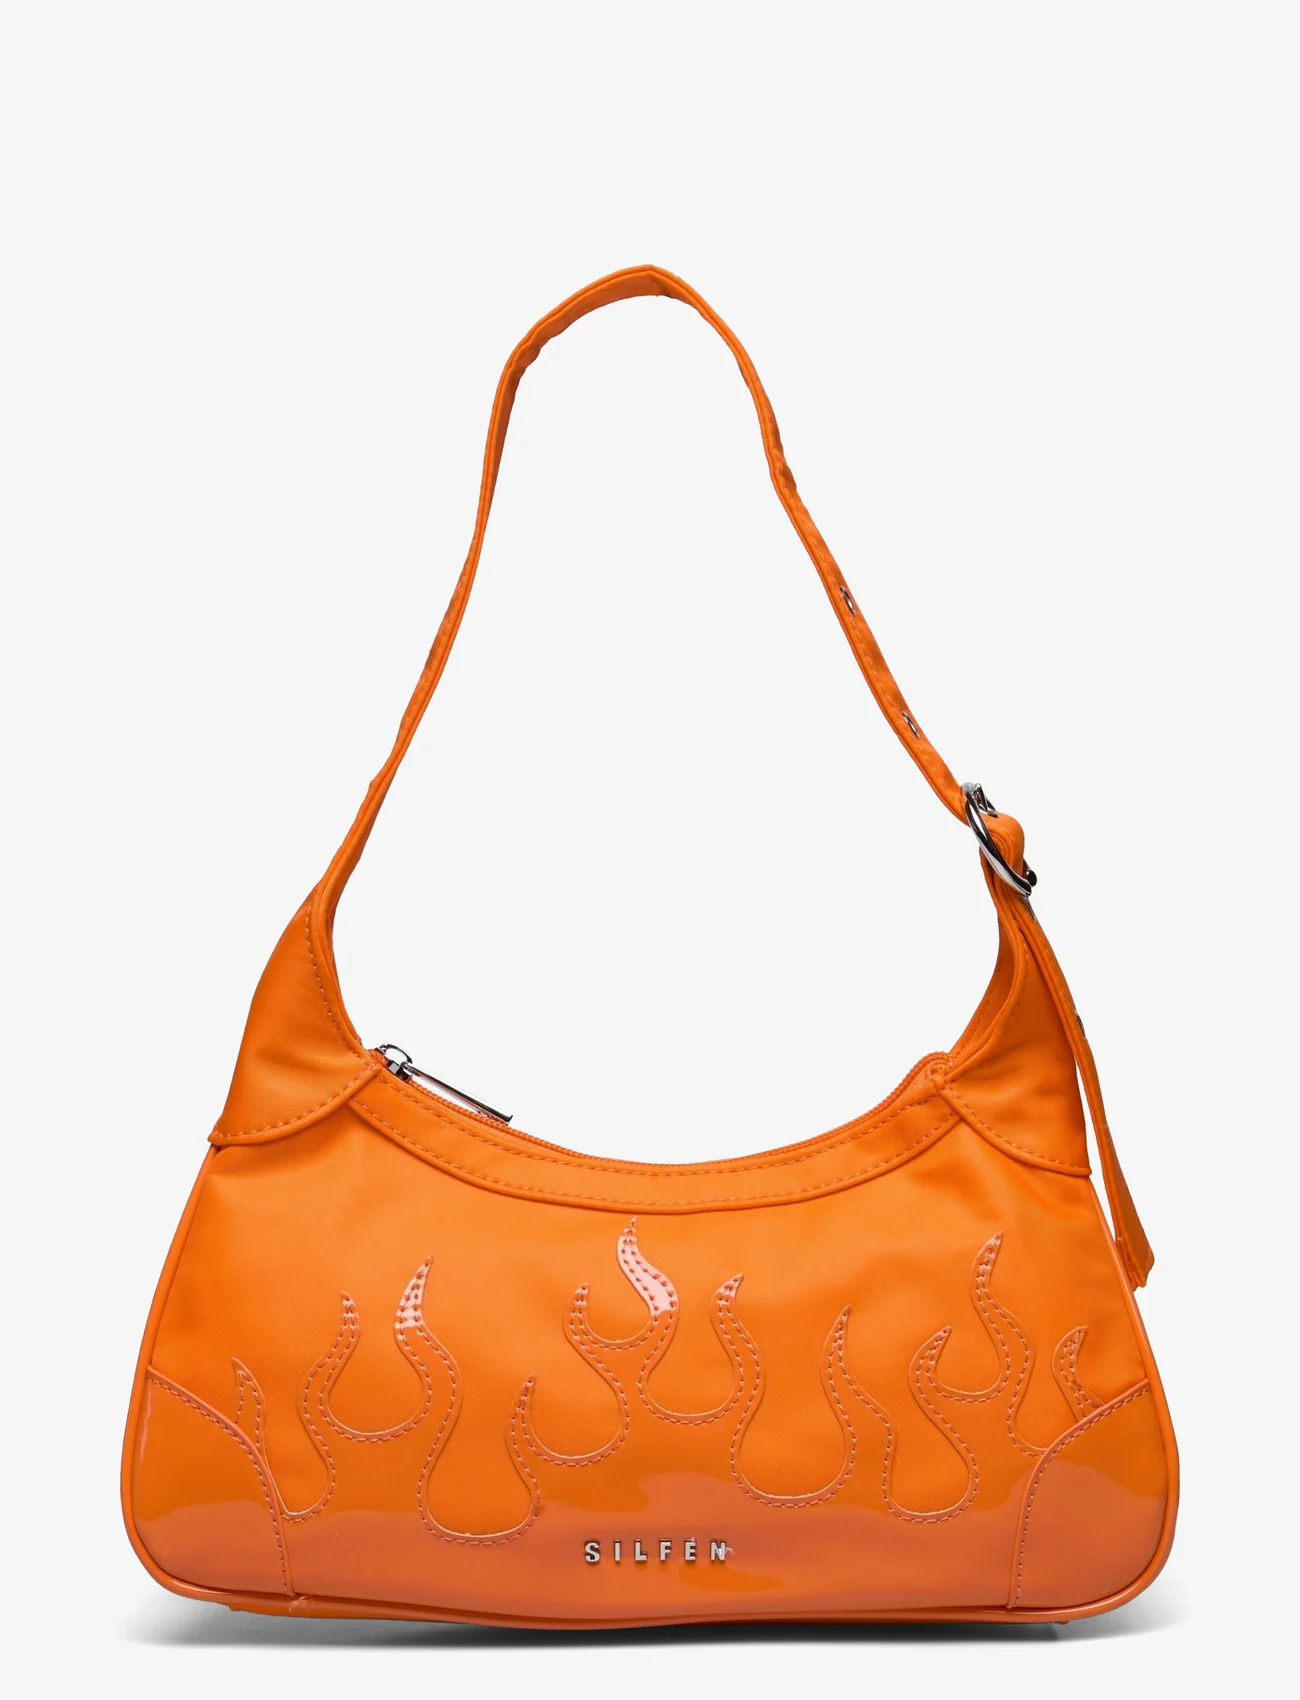 Silfen - Shoulder Bag Thora - Flame - damen - orange - 0